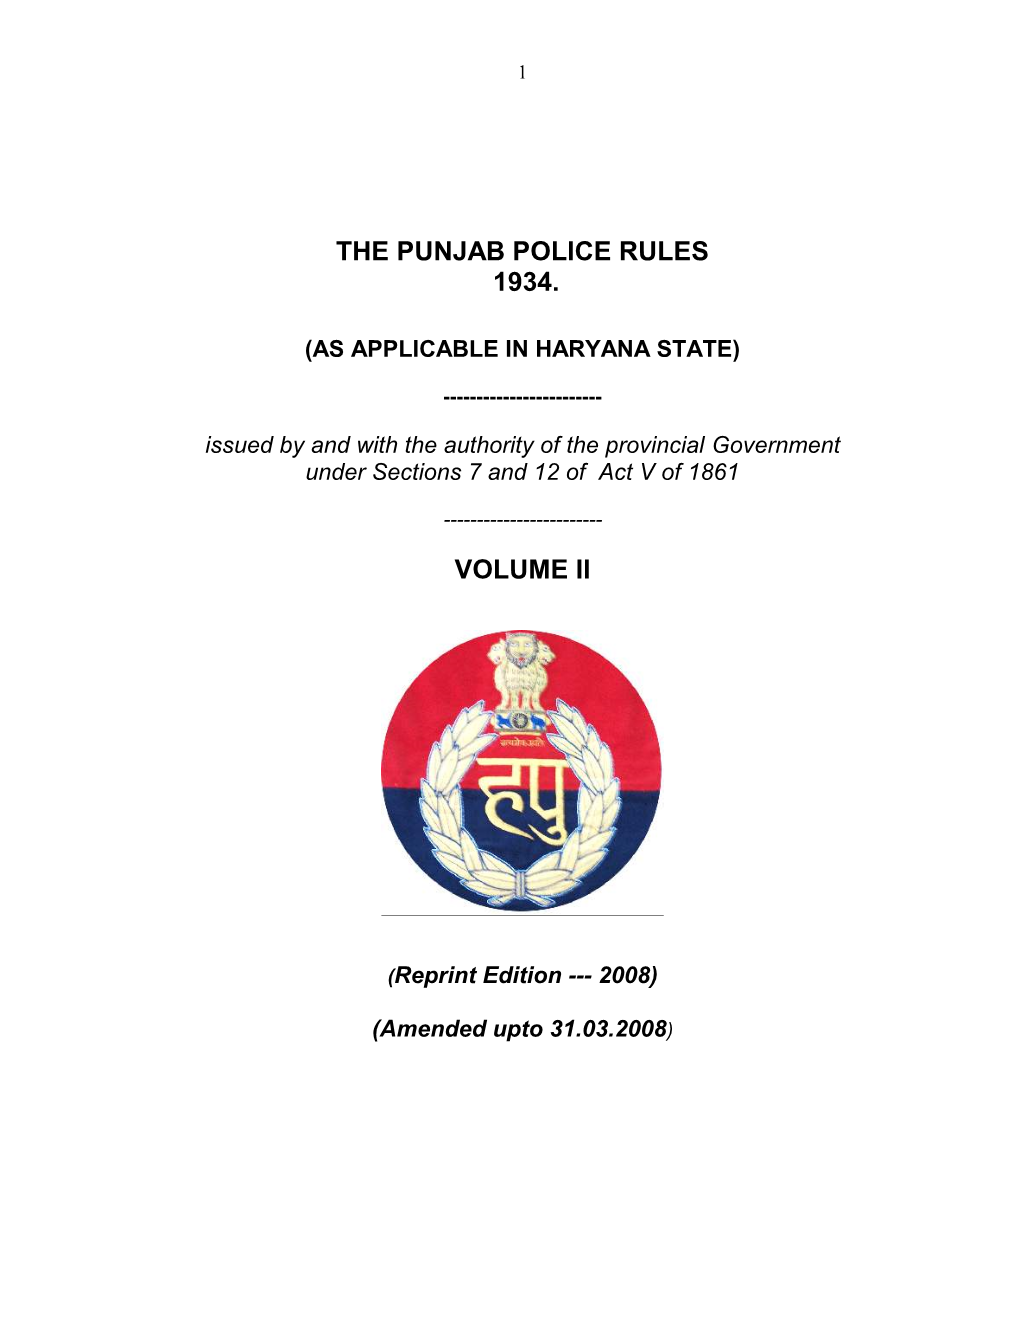 Punjab Police Rule Volume II